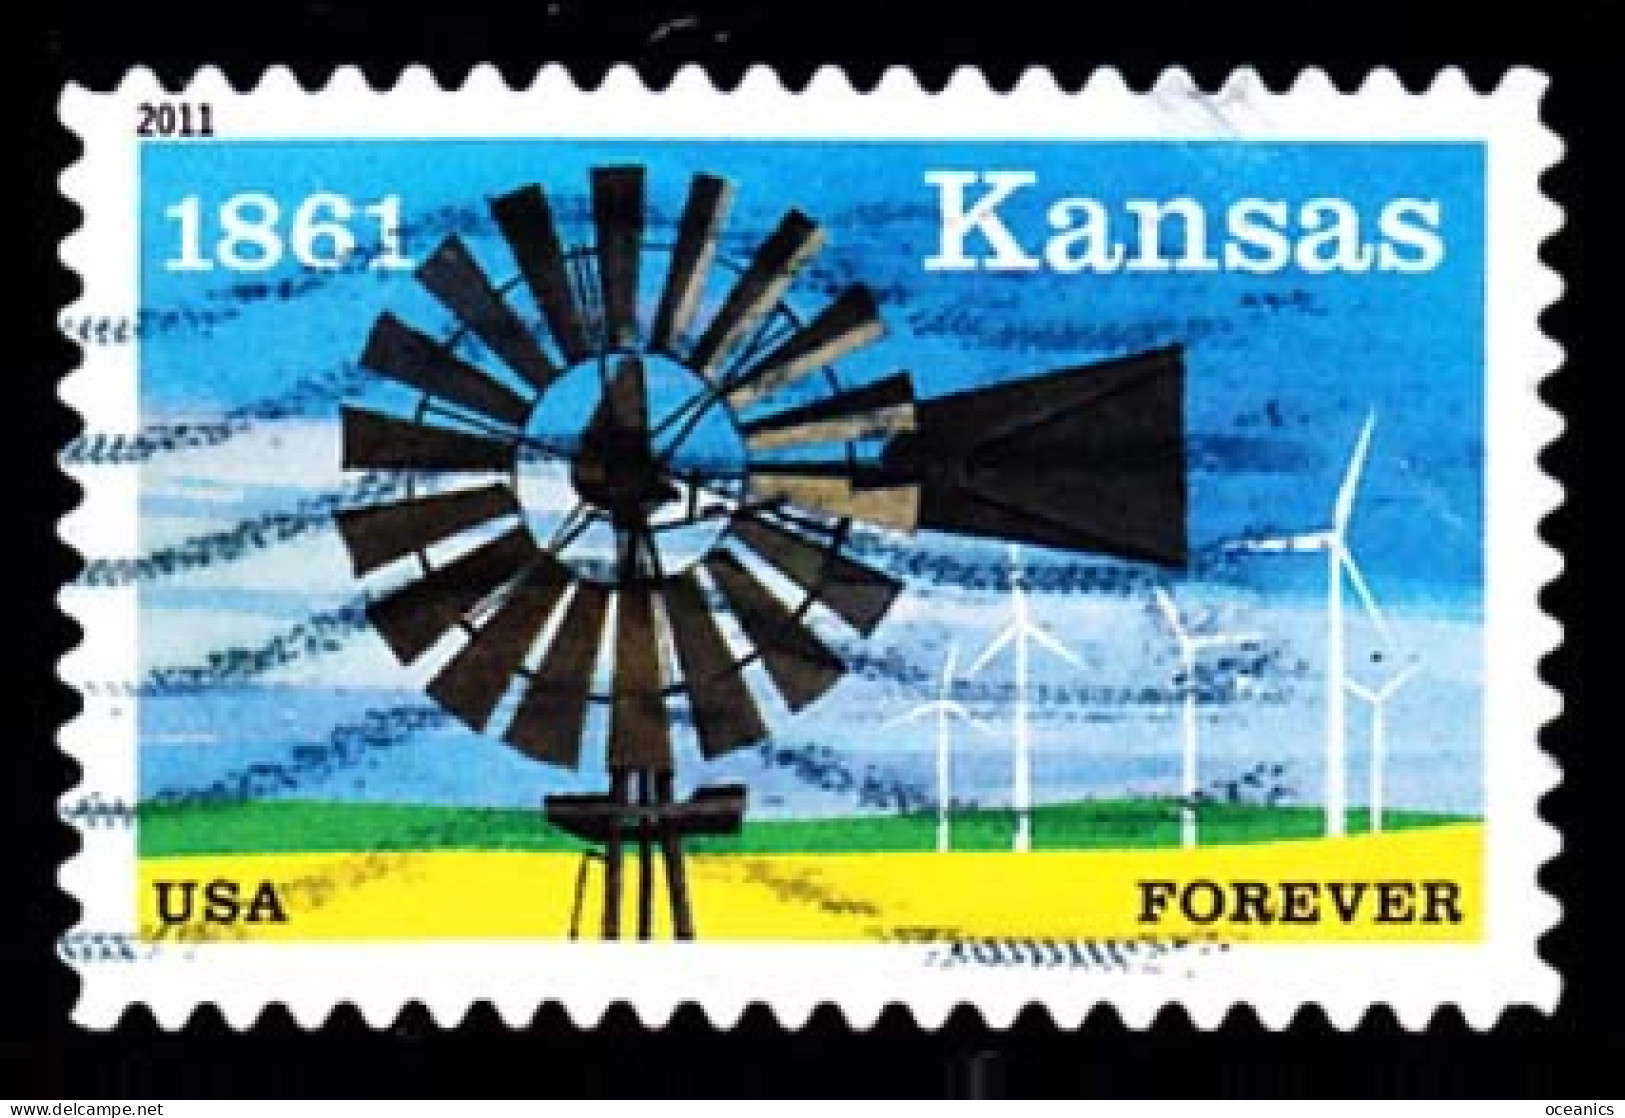 Etats-Unis / United States (Scott No.4493 - Kaansas) (o) - Used Stamps